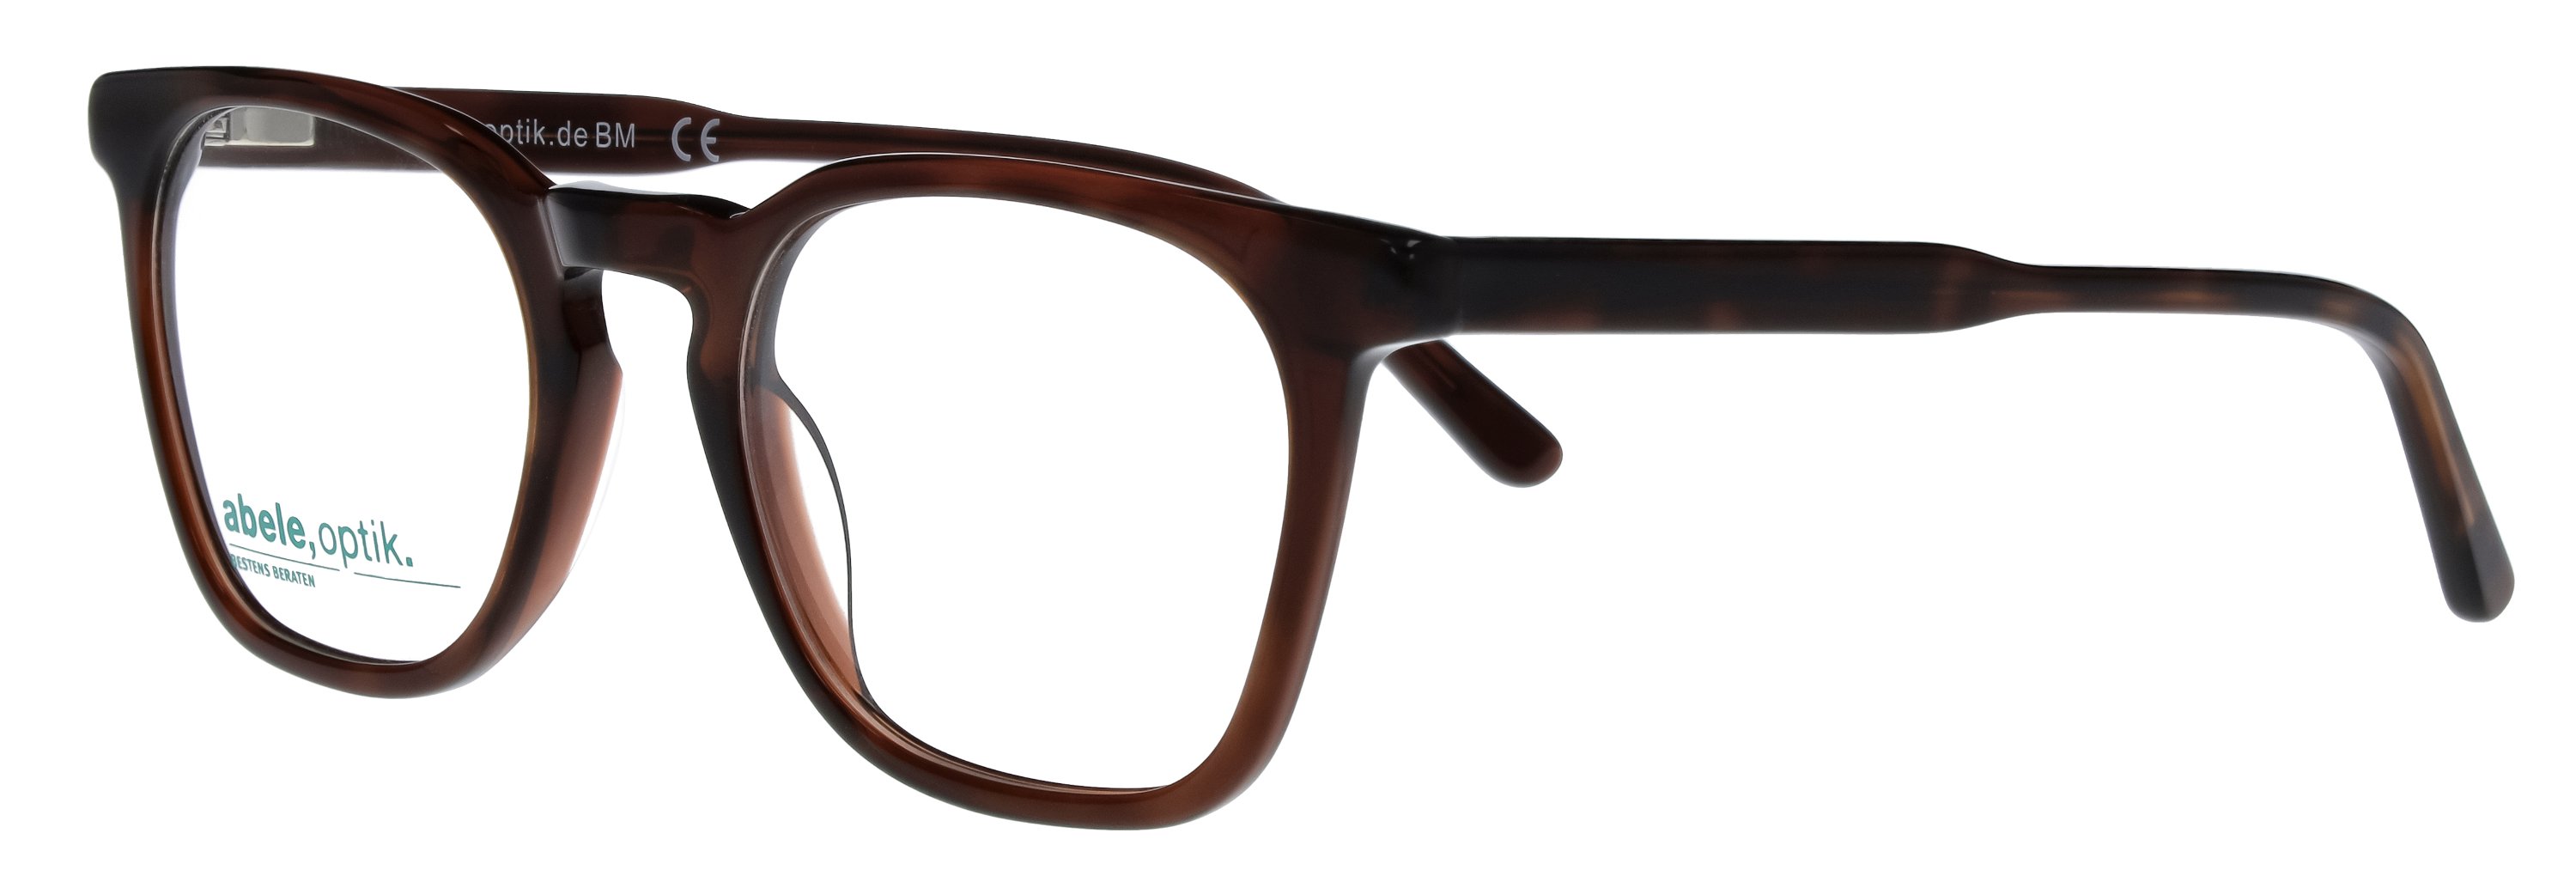 Das Bild zeigt die Korrektionsbrille 148861 von der Marke Abele Optik in braun transparent